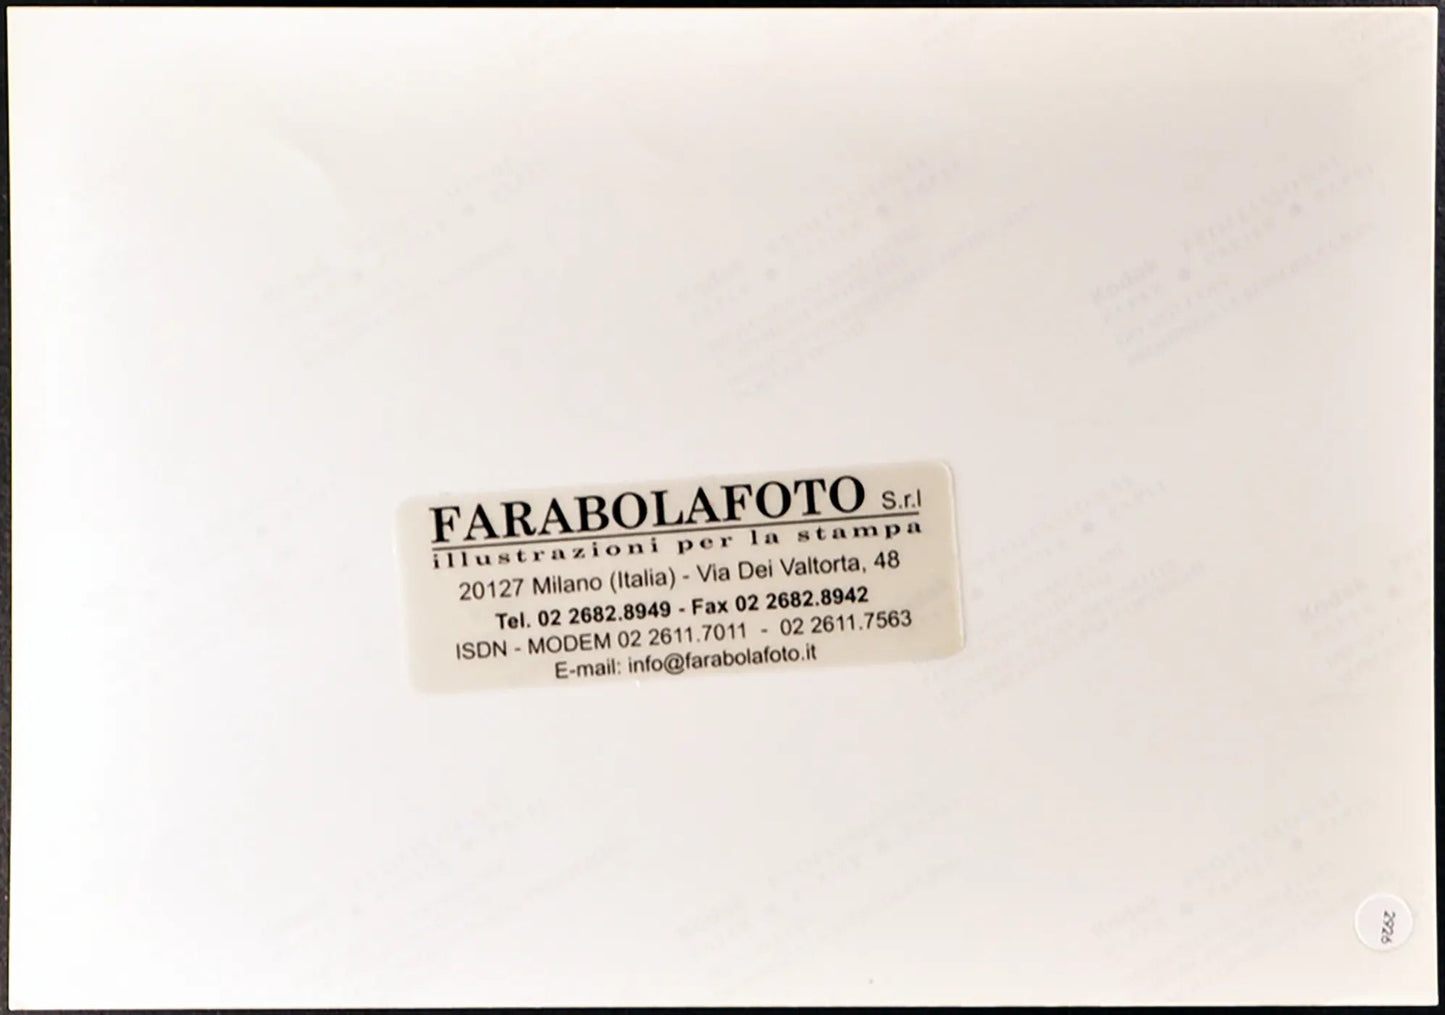 Grande Fratello 1 Taricone e Liorni Ft 2926 - Stampa 20x25 cm - Farabola Stampa digitale